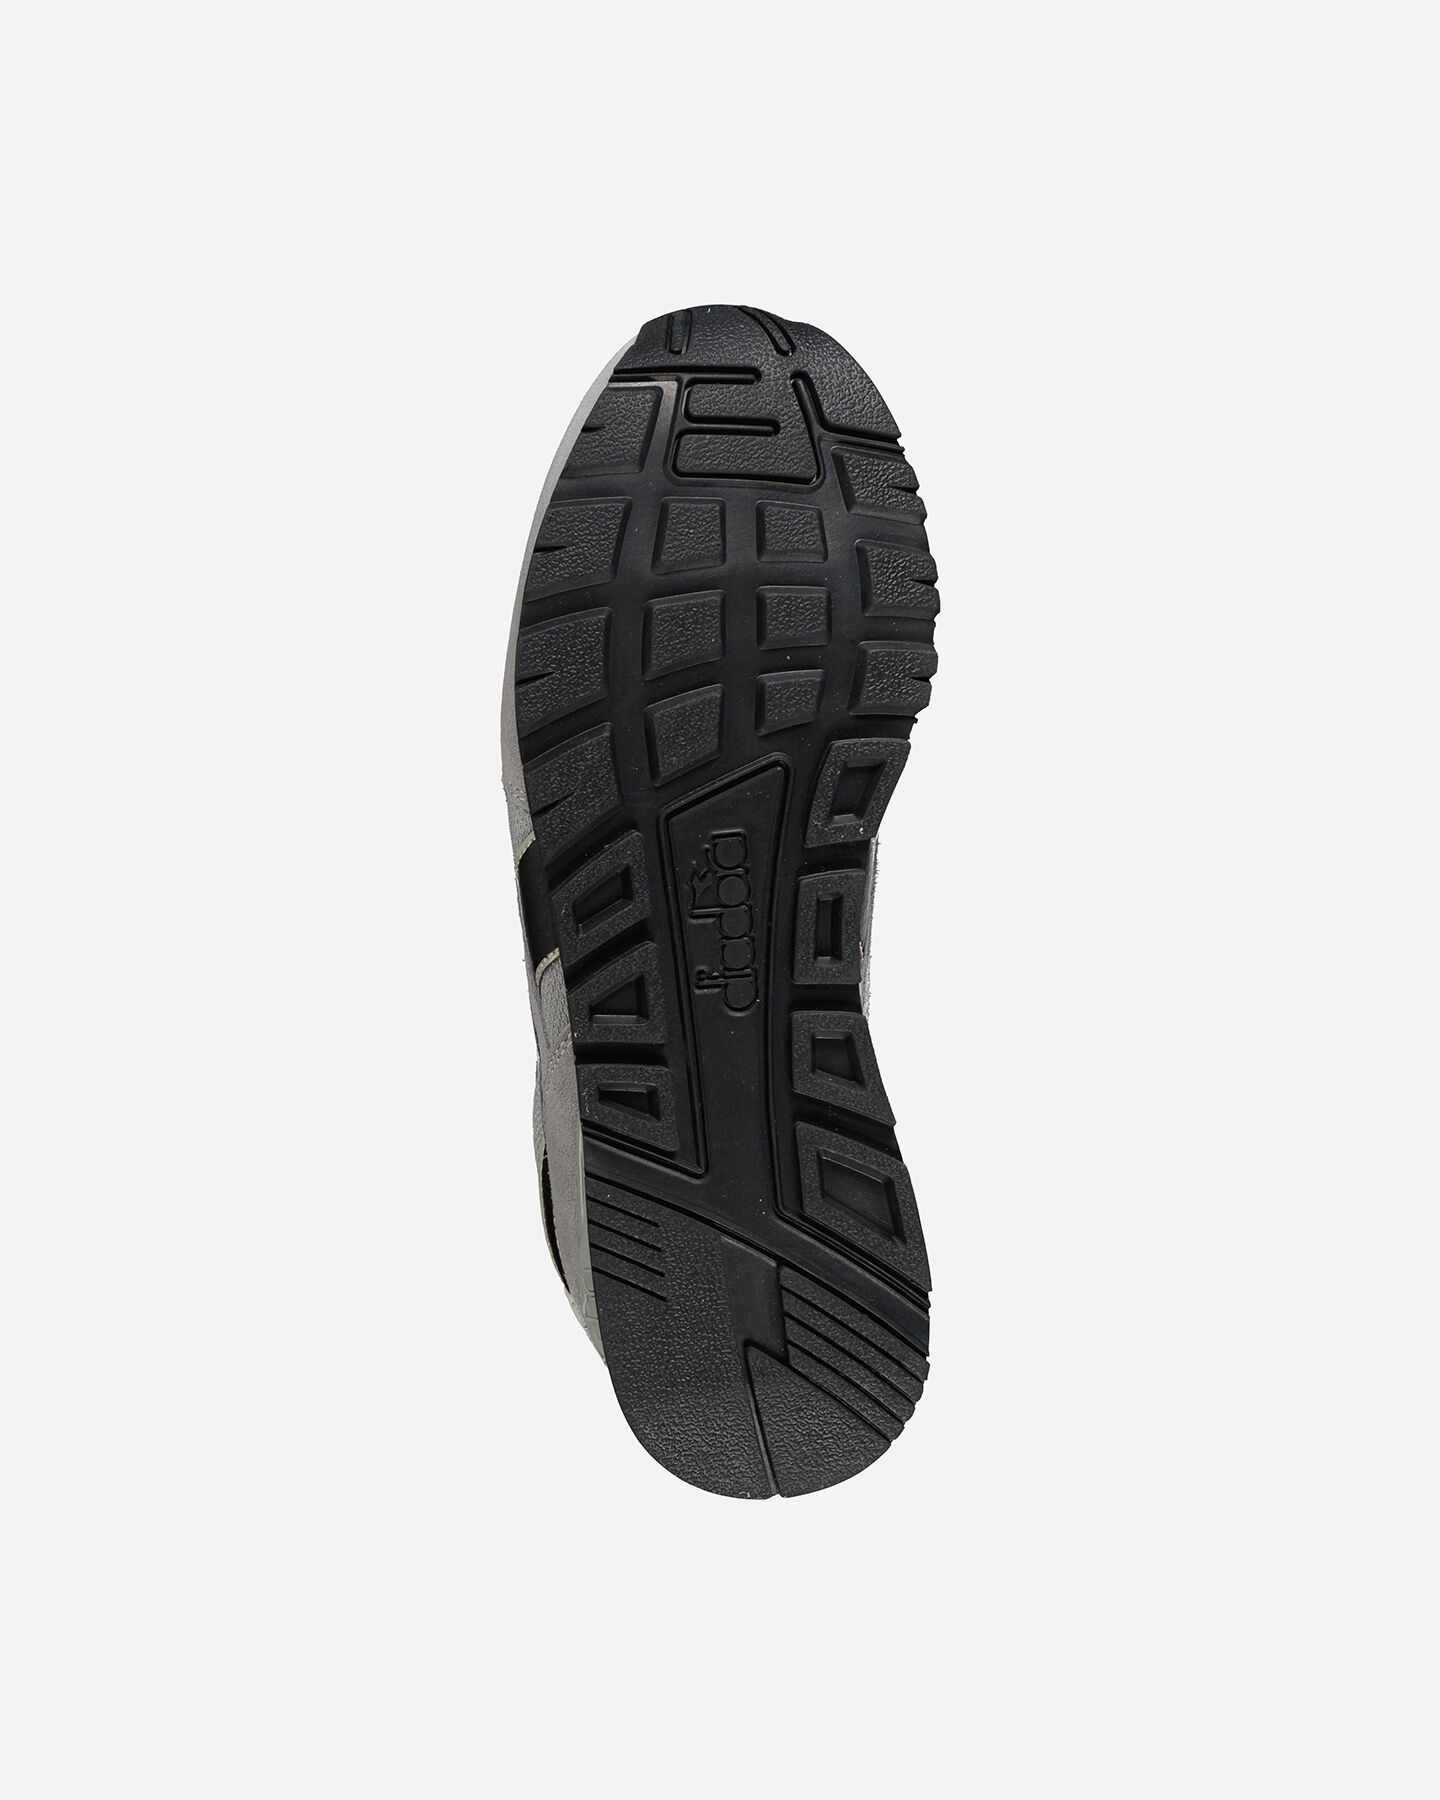  Scarpe sneakers DIADORA N 92 ADVANCE PALOMA M S5339408|C3666|6 scatto 2